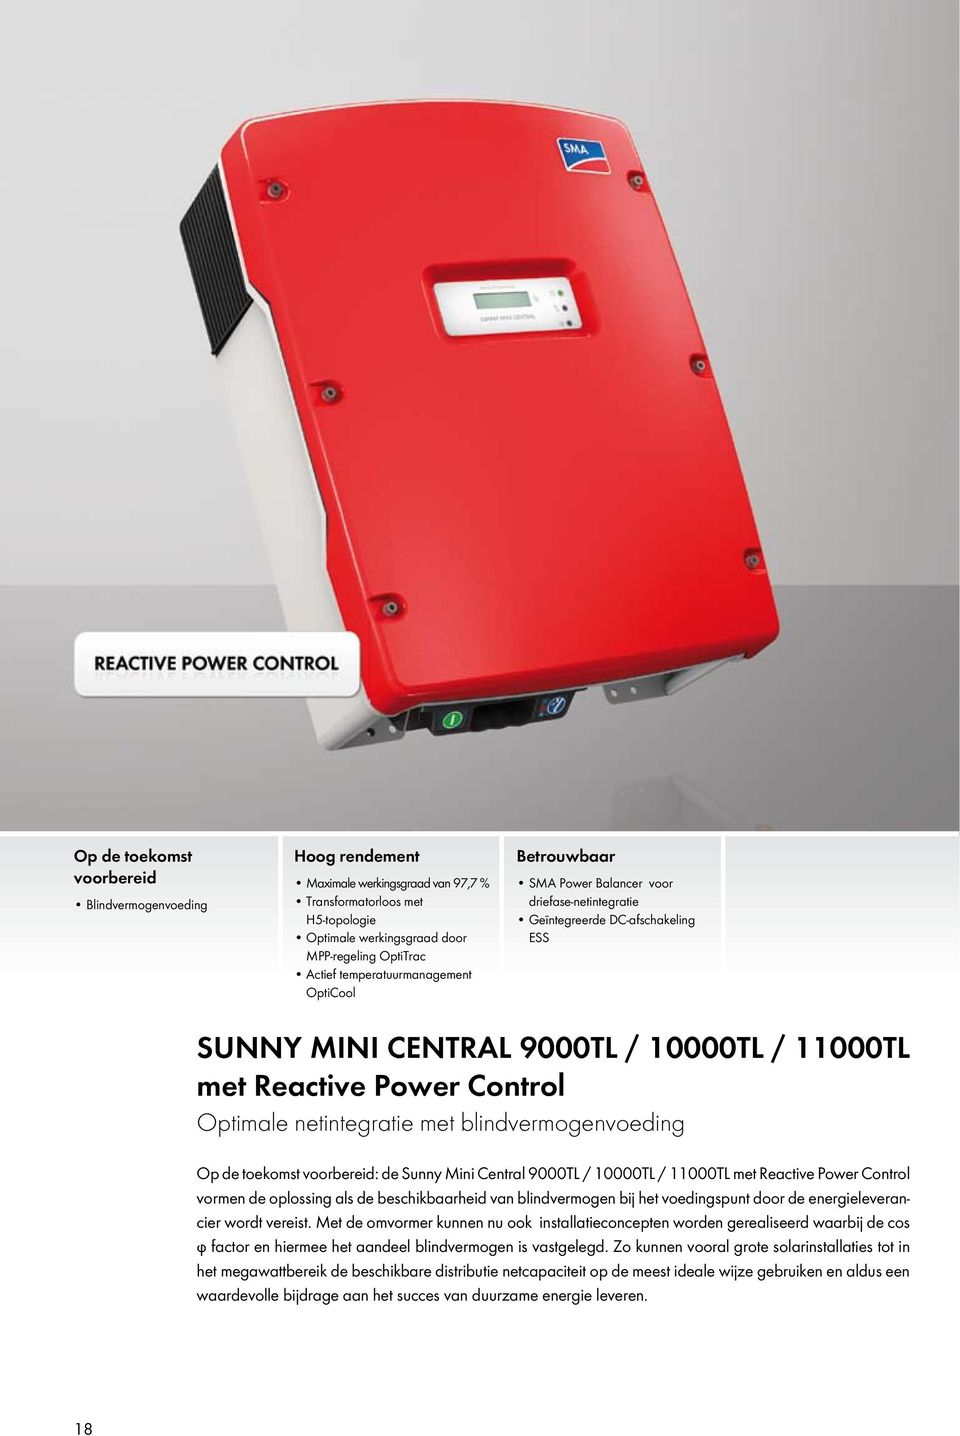 Optimale netintegratie met blindvermogenvoeding Op de toekomst voorbereid: de Sunny Mini Central 9000TL / 10000TL / 11000TL met Reactive Power Control vormen de oplossing als de beschikbaarheid van